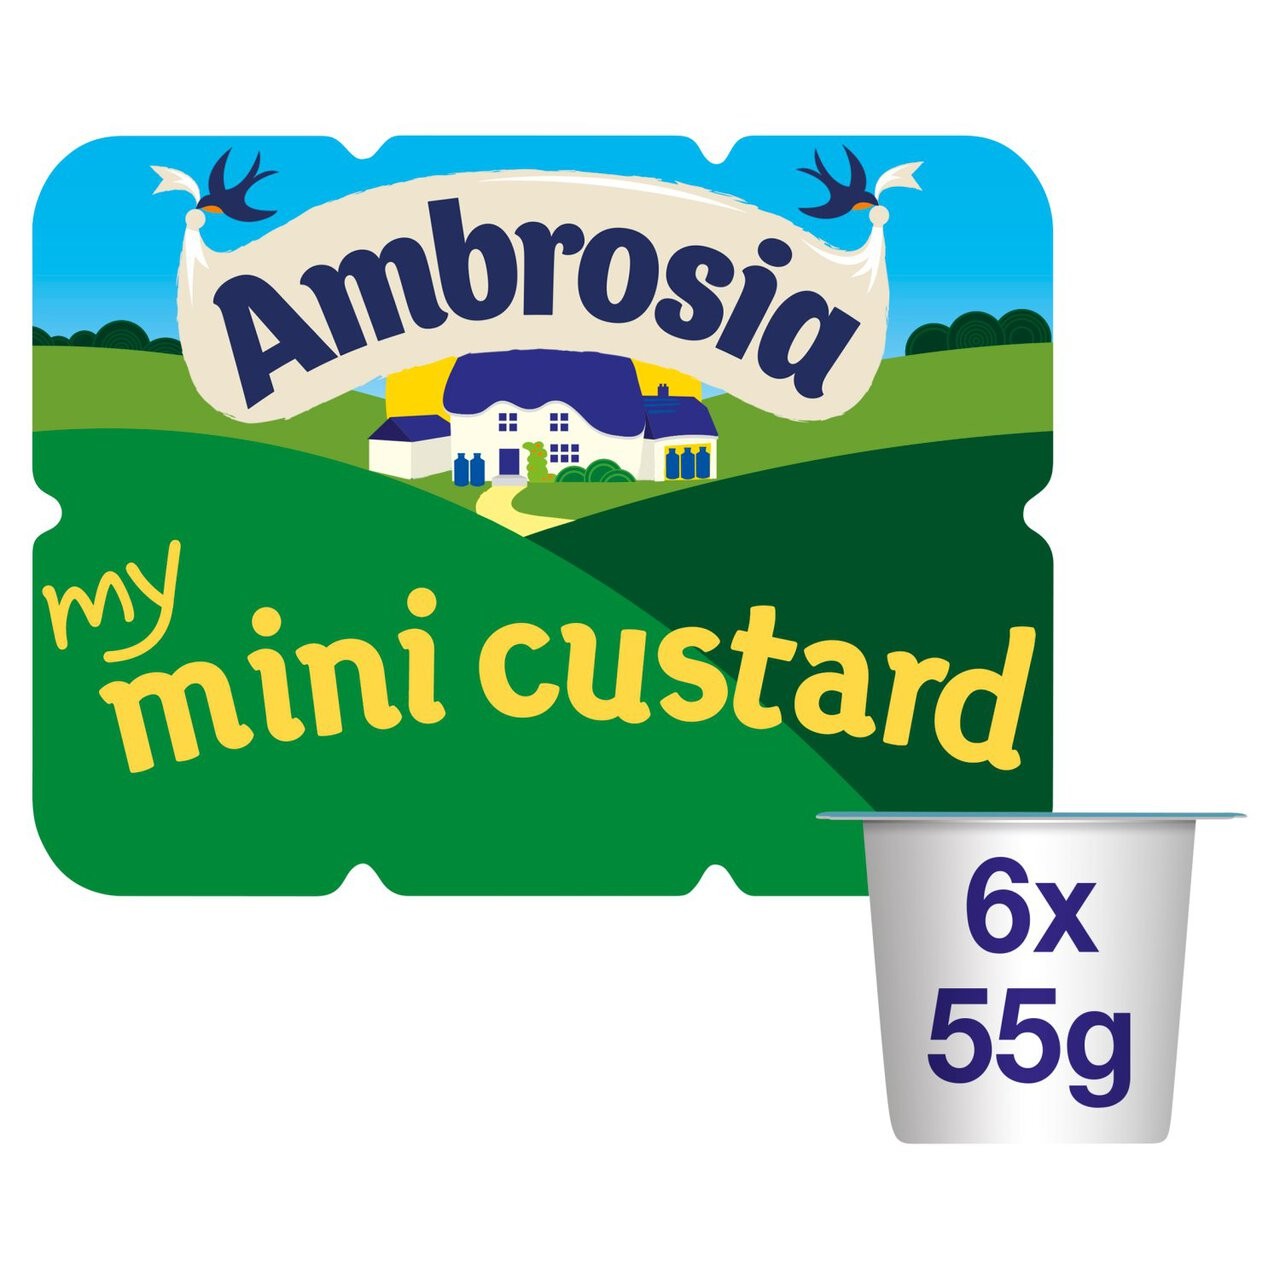 Thu hồi các sản phẩm váng sữa Ambrosia My Mini Pots do có thể chứa các mảnh nhựa